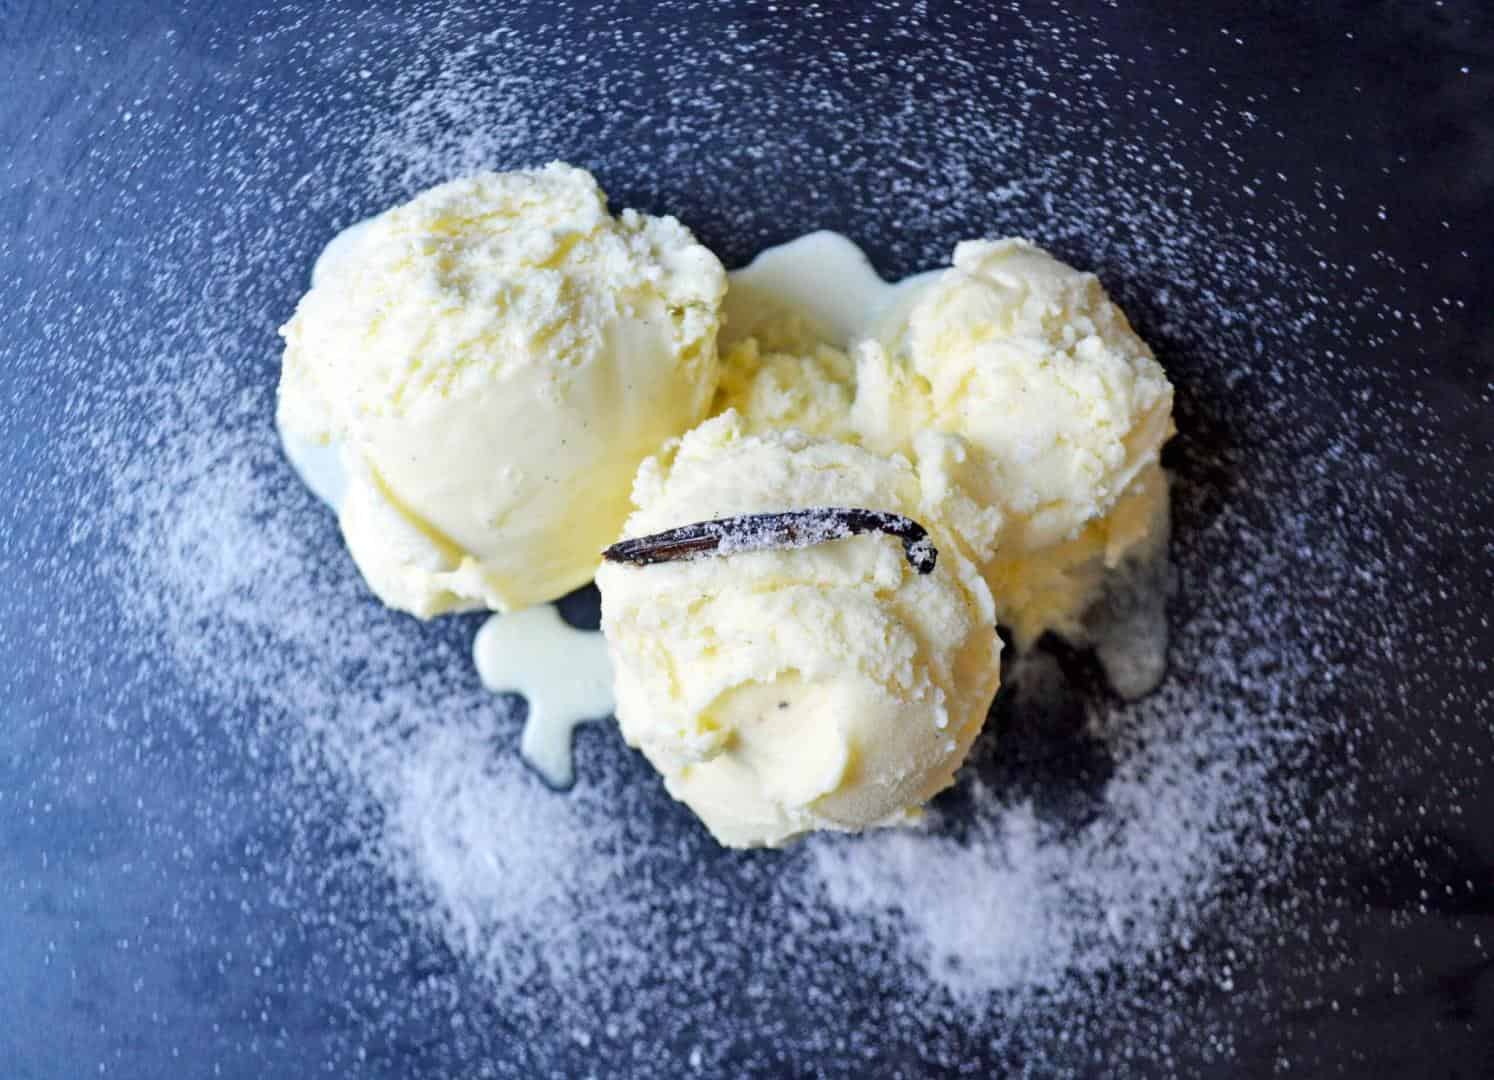 Sắc trắng: Thuần khiết, trong trẻo liệu có phải là những tính từ phù hợp cho vị kem vanilla được làm từ chiếc máy làm kem của Đức thượng hạng?